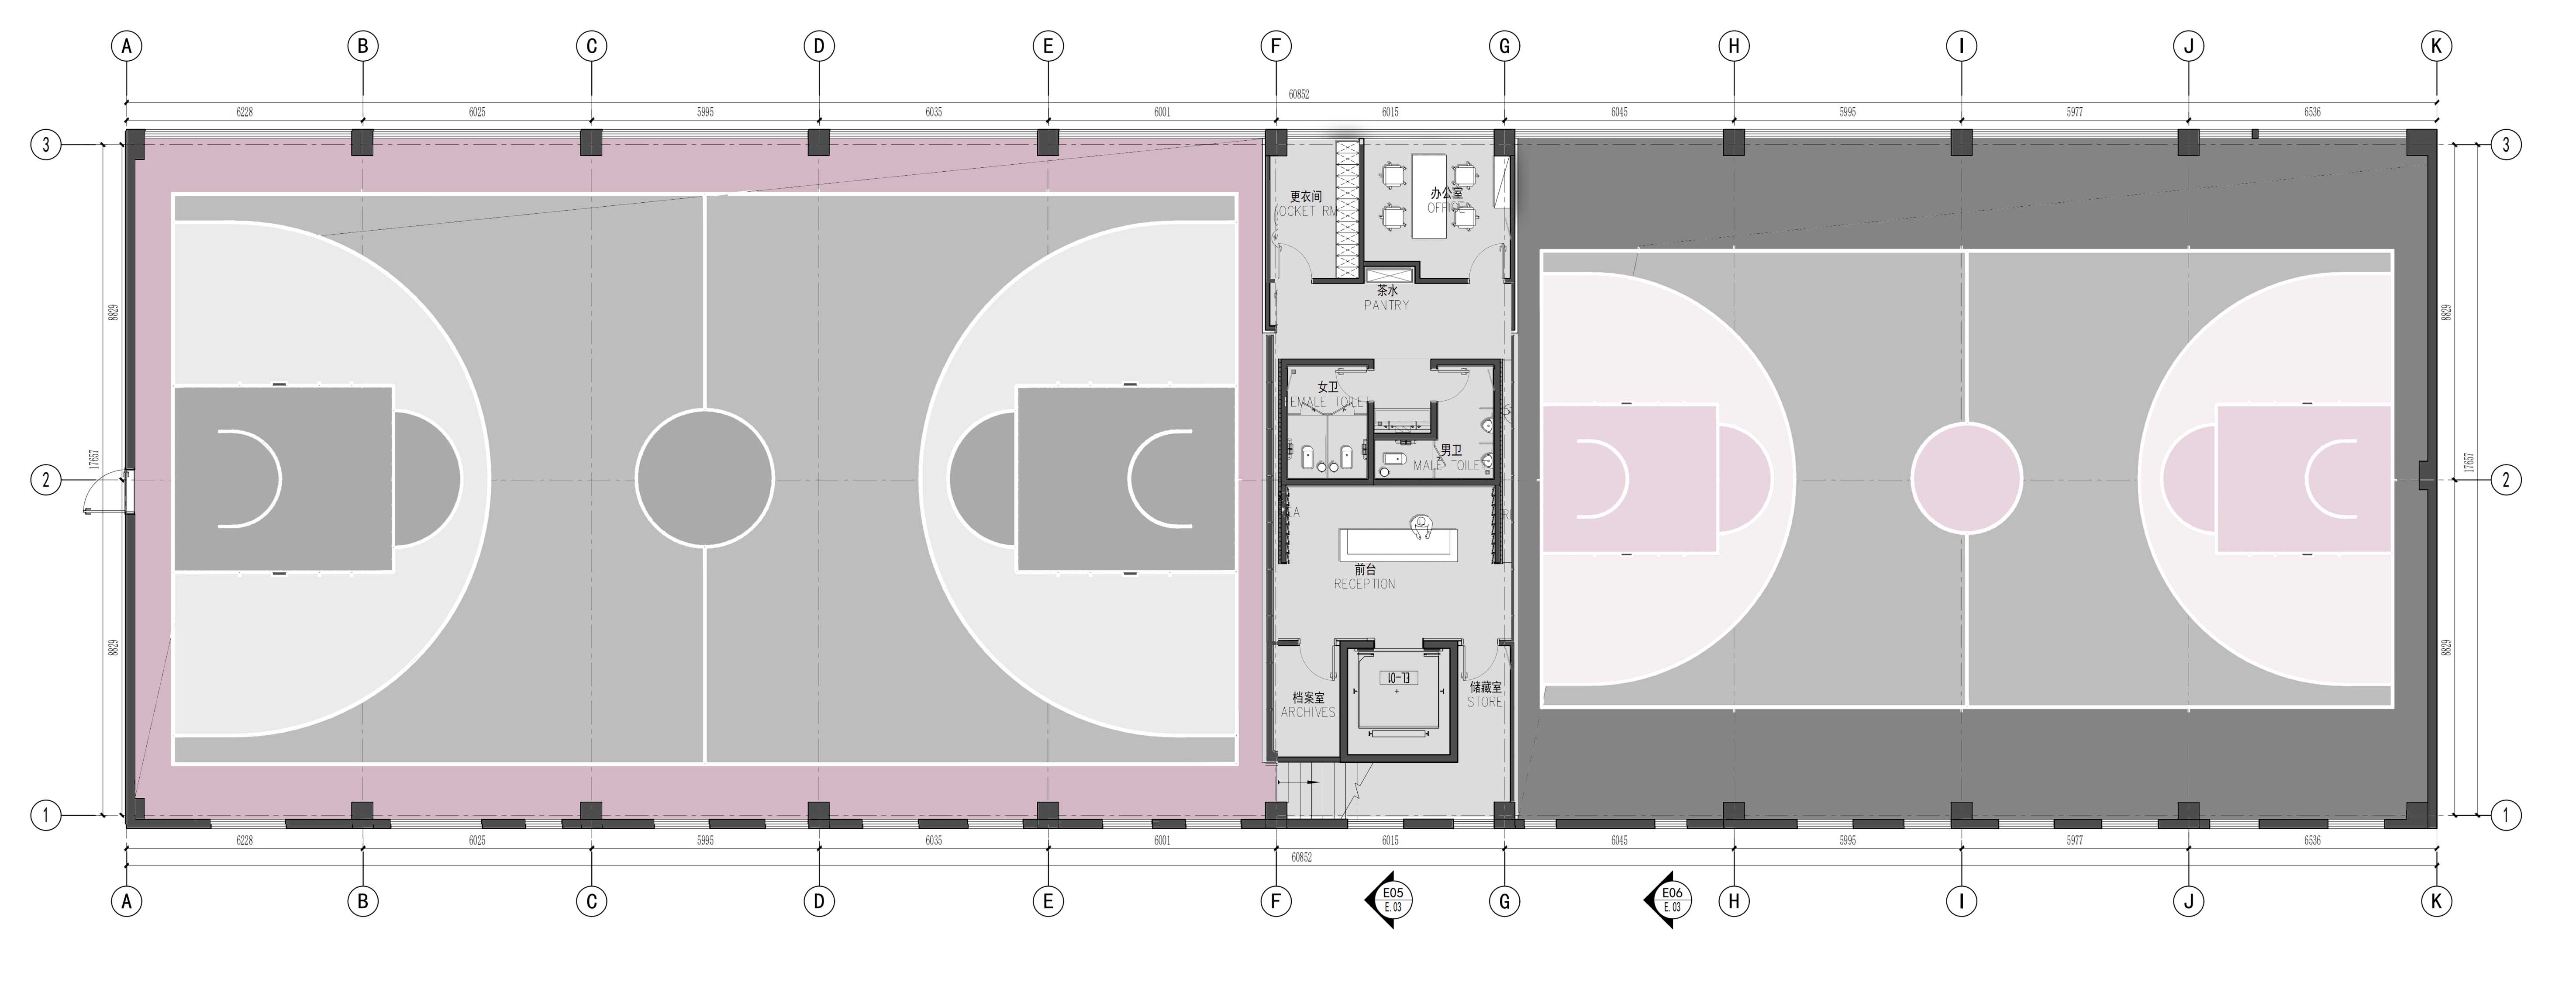 室内运动空间,篮球场设计,篮球馆设计,室内篮球场设计,元素体育篮球馆橄榄树店,元素体育篮球馆,元素体育,昆明元素体育,运动空间设计,上海平介设计,平介设计,平介设计作品